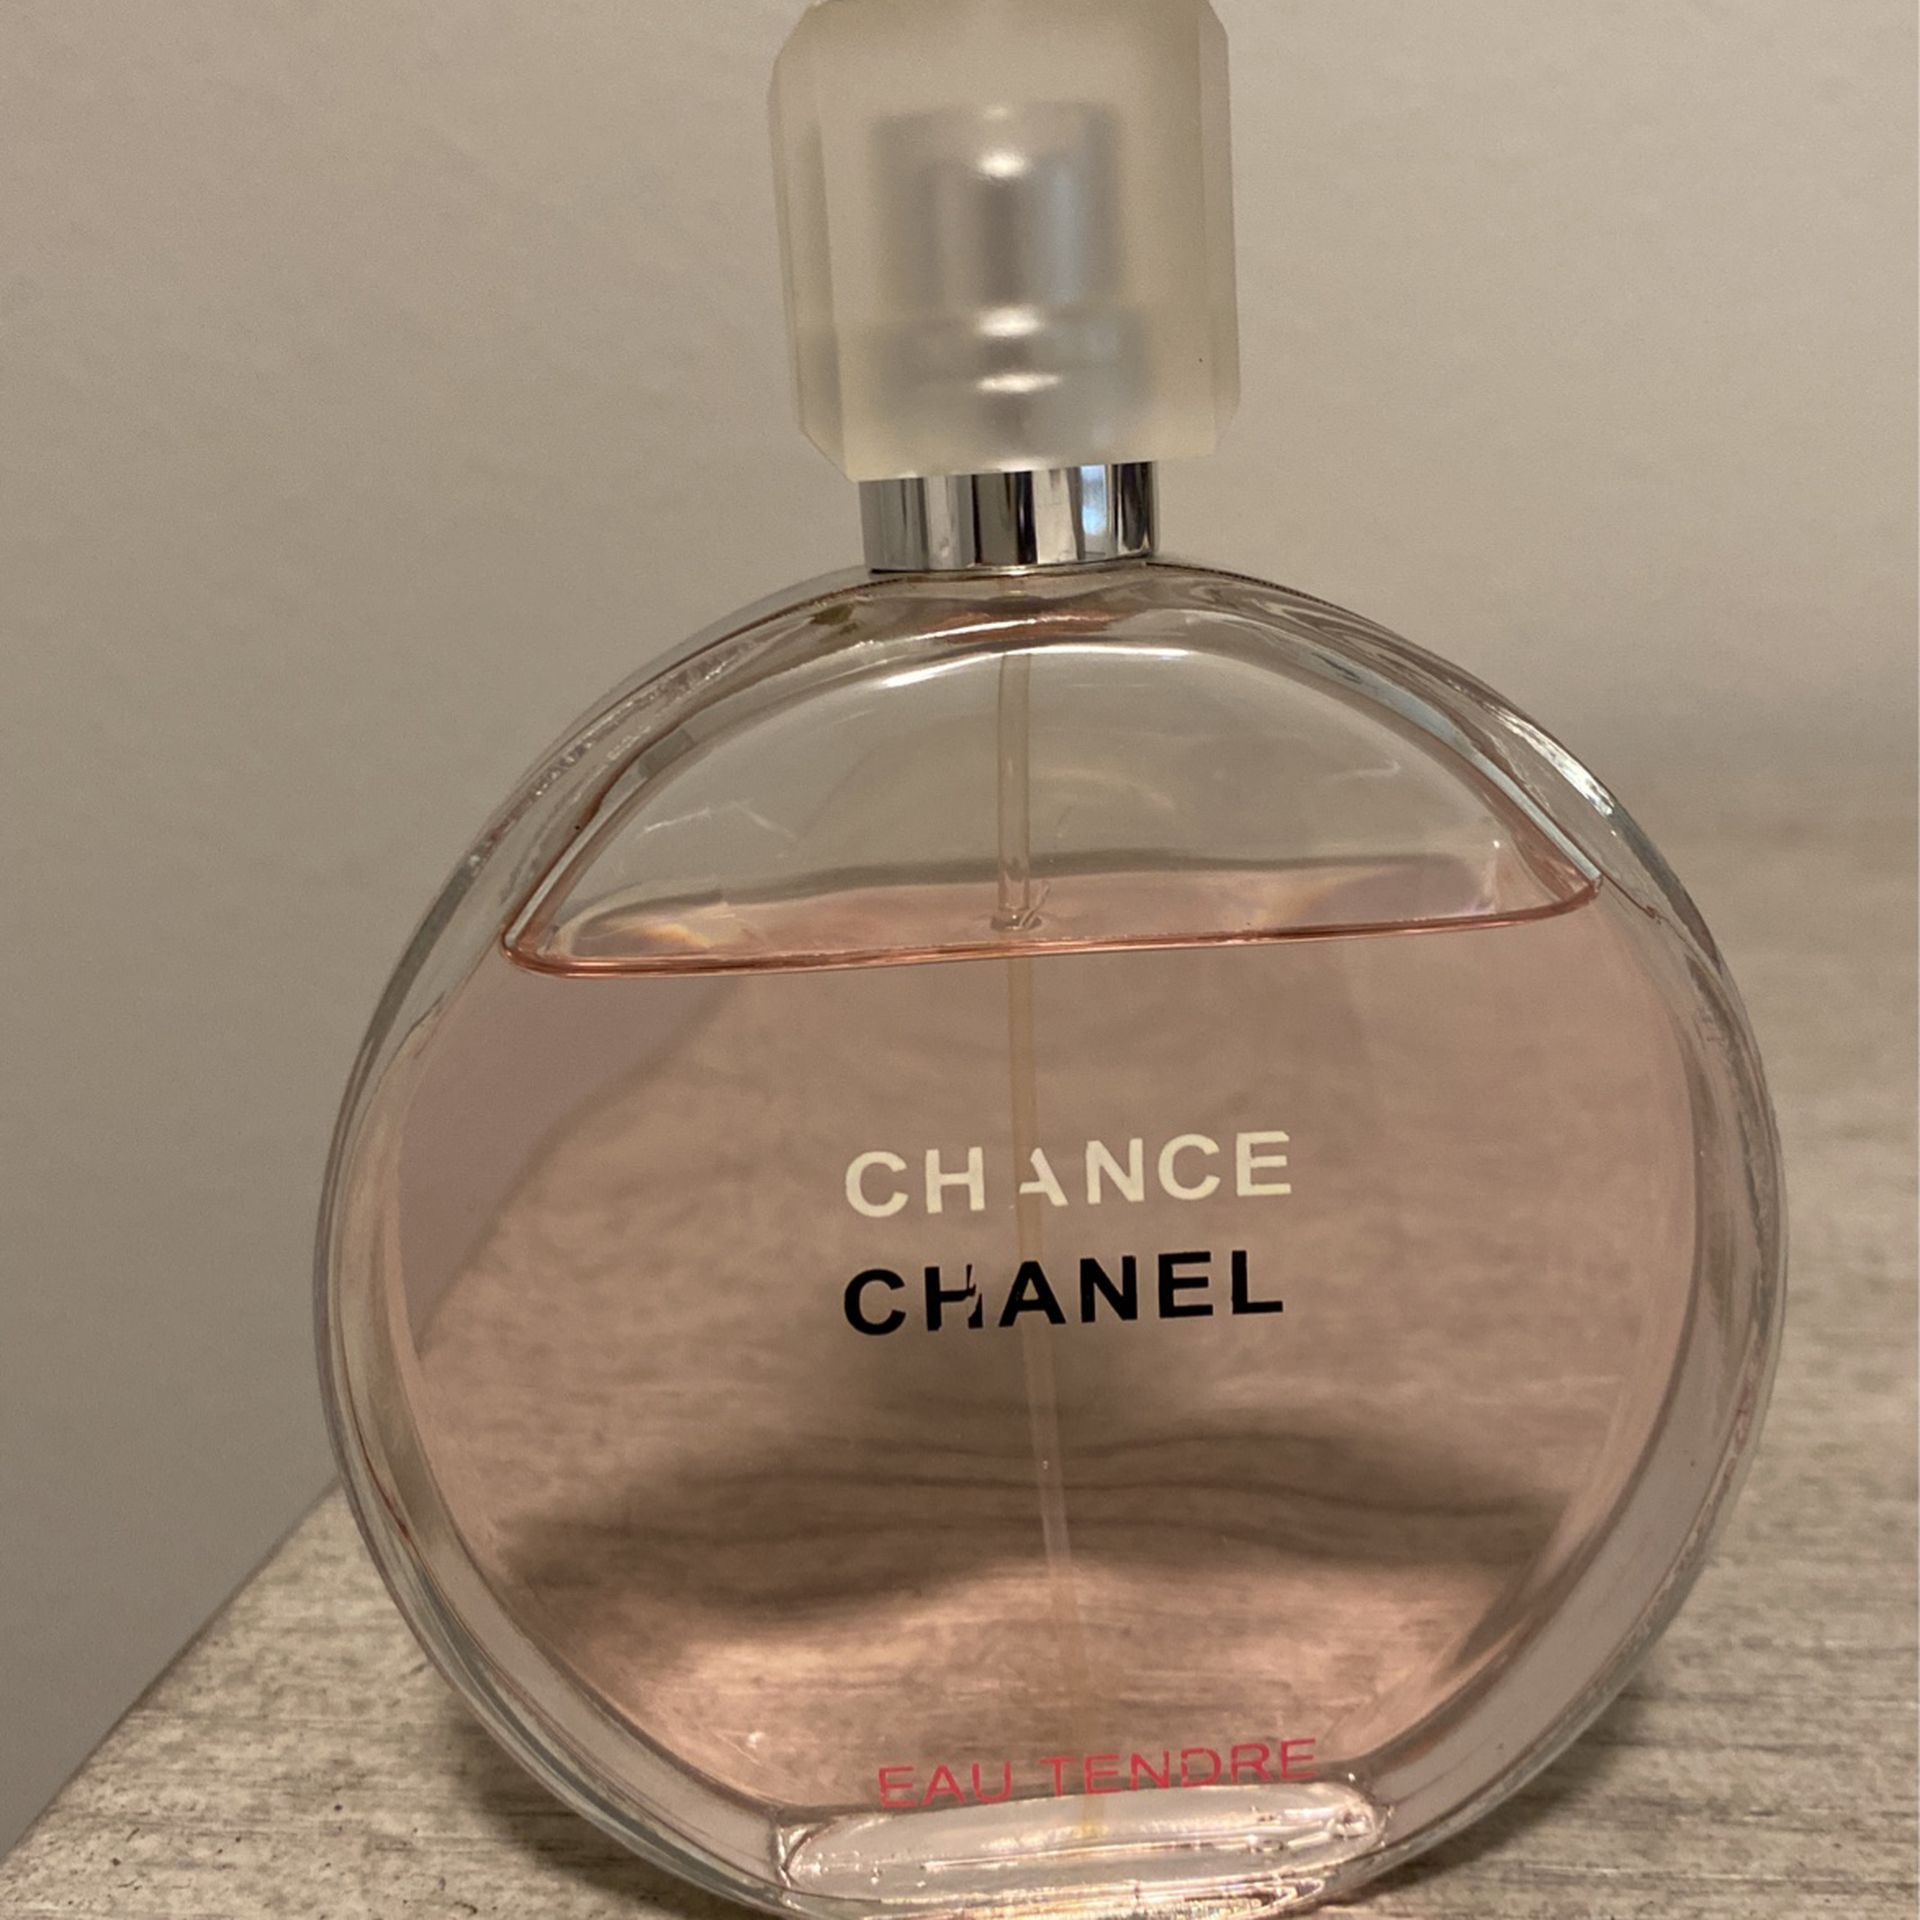 CHANEL CHANCE Eau De Parfum 3.4 Oz for Sale in Los Angeles, CA - OfferUp